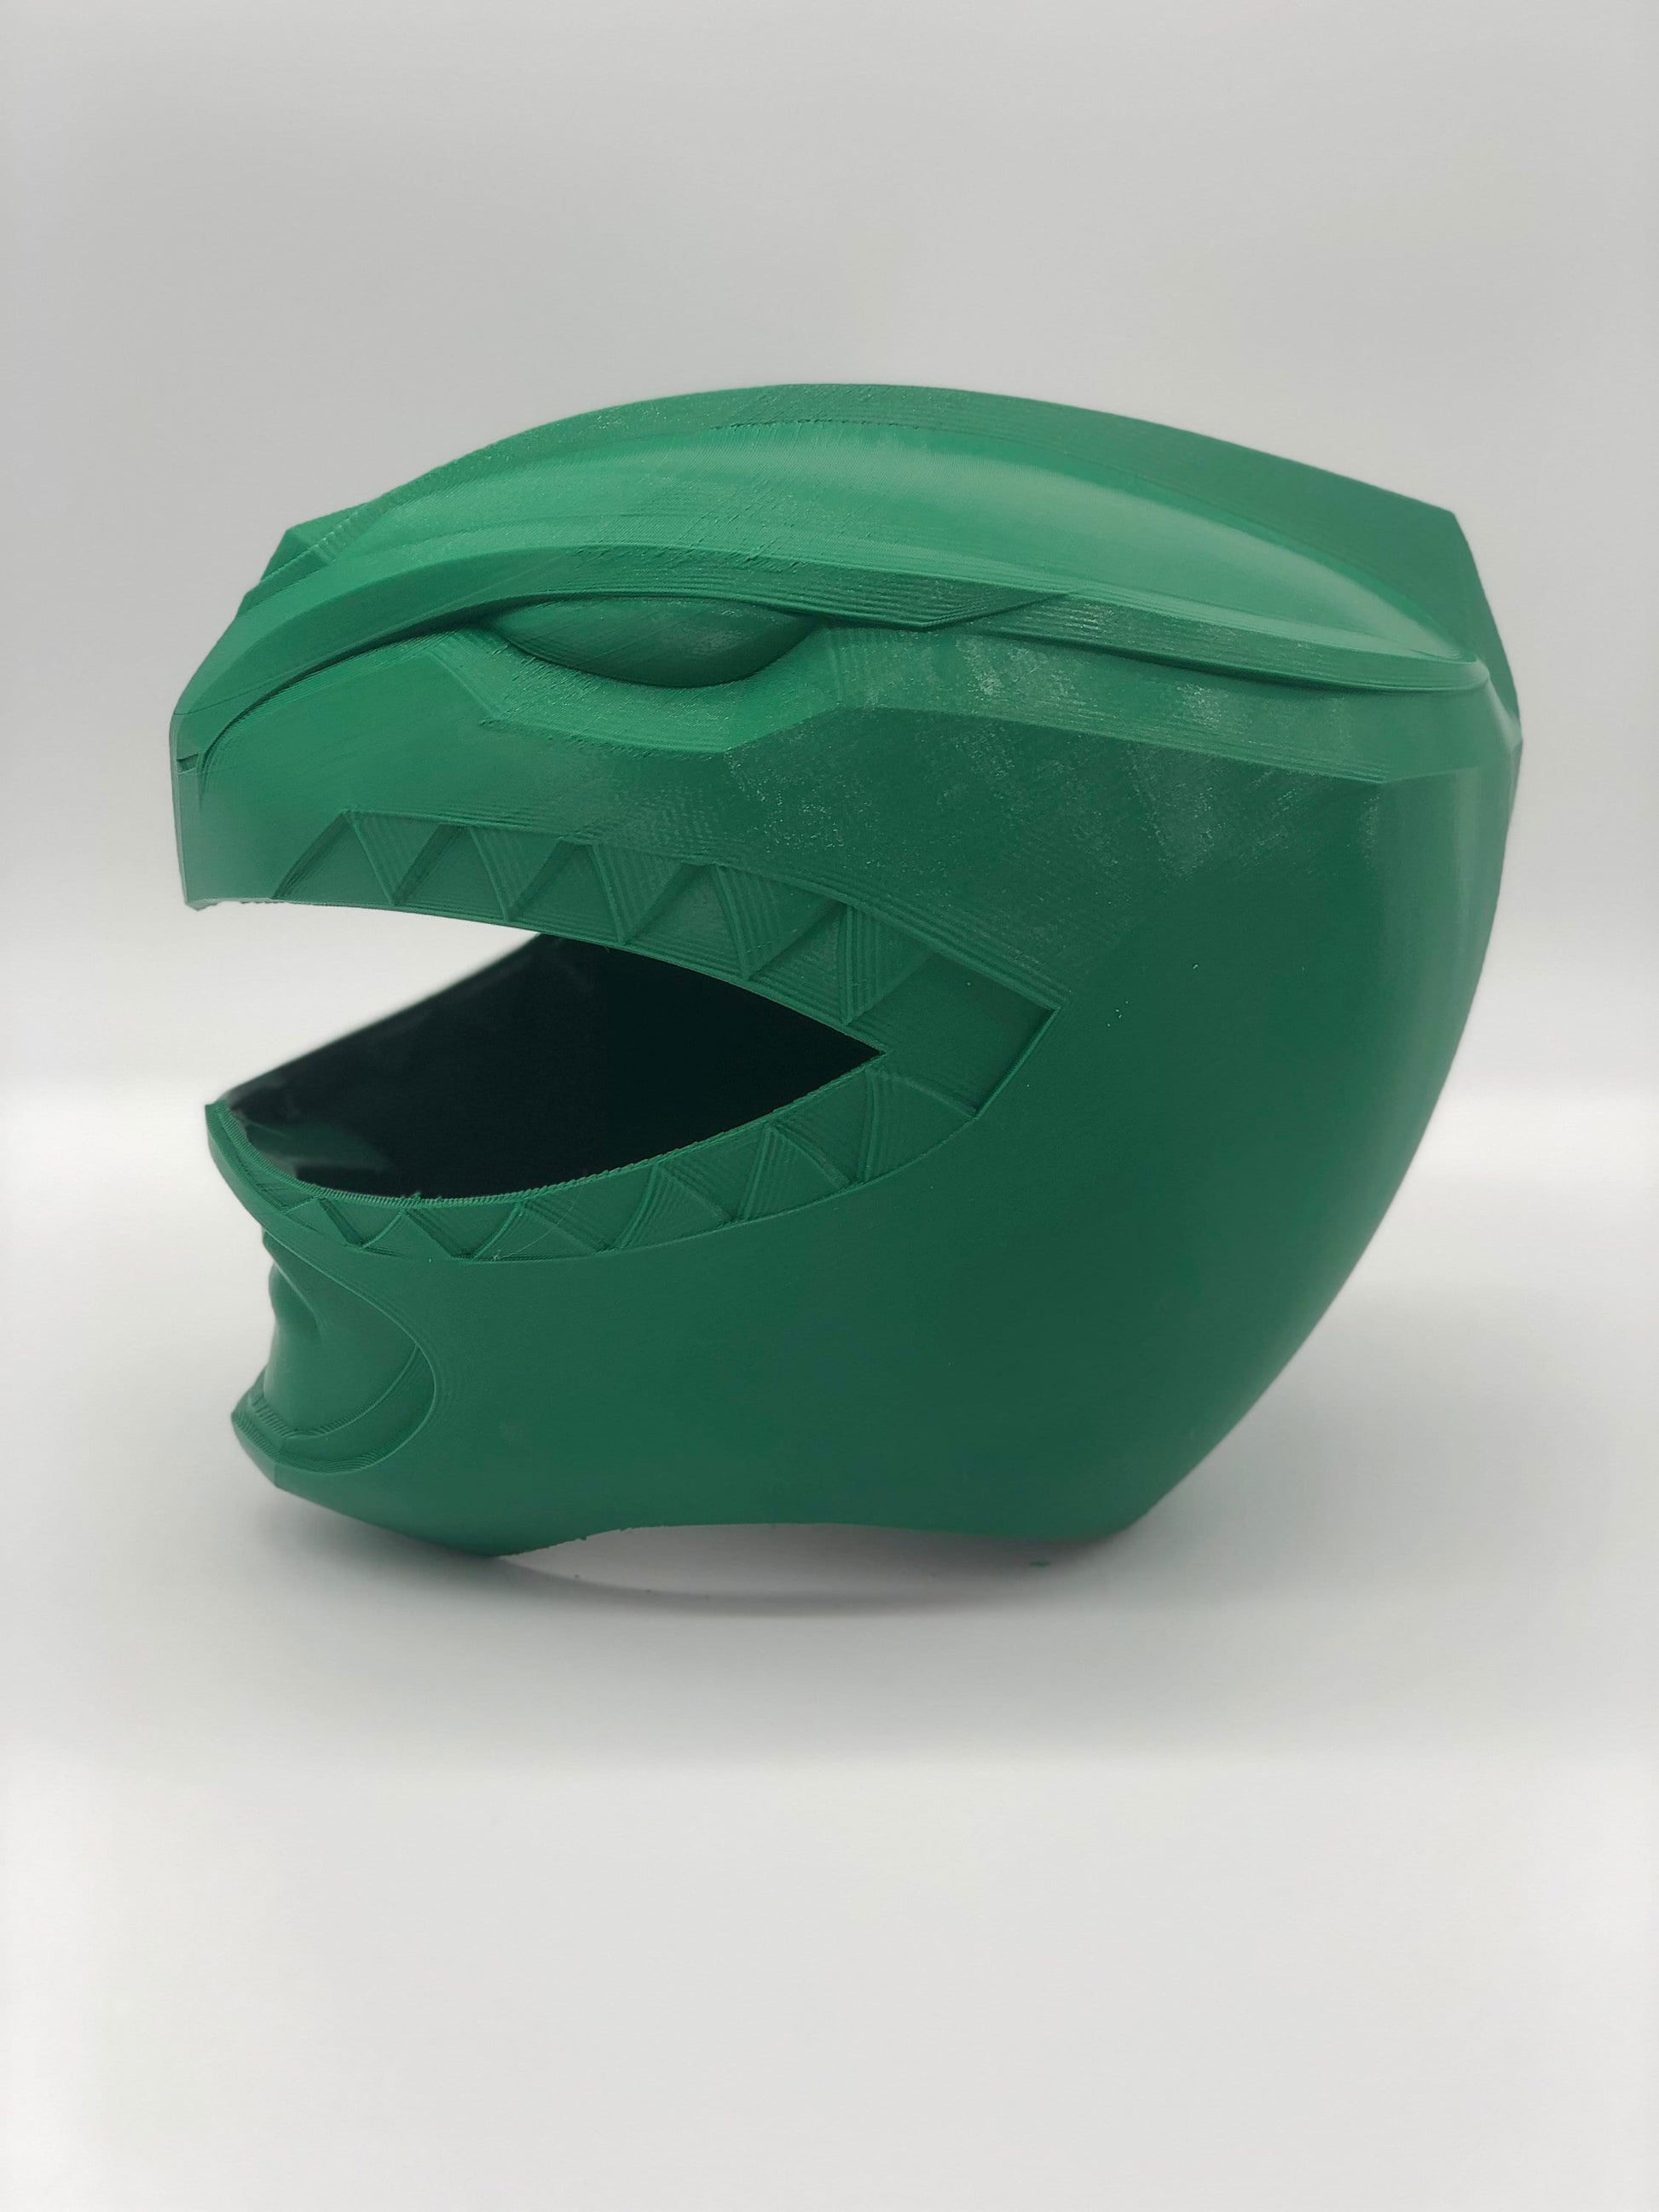 Green Power Rangers Cosplay Helmet